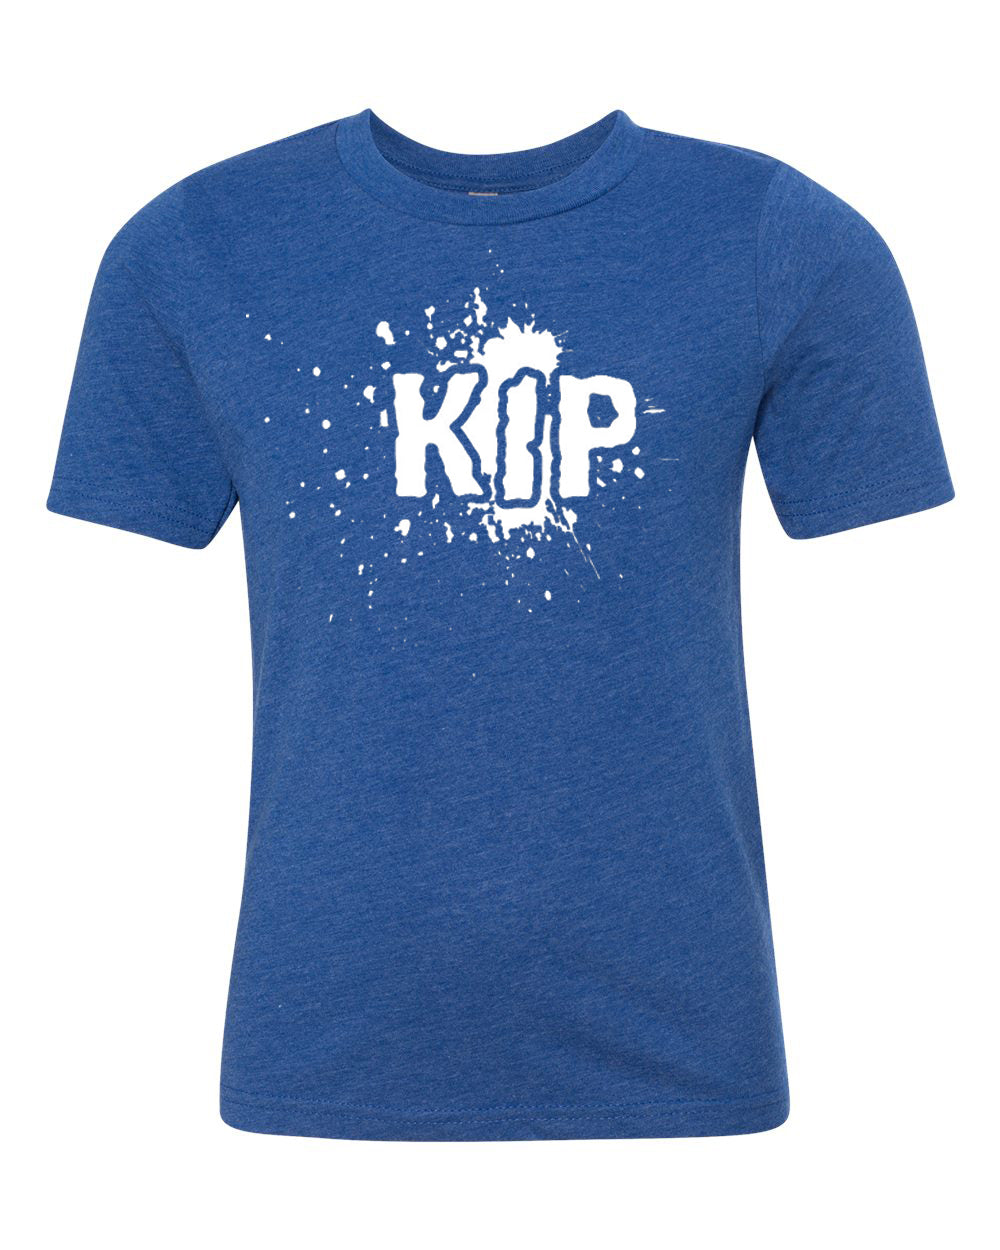 Kip Youth T-Shirt